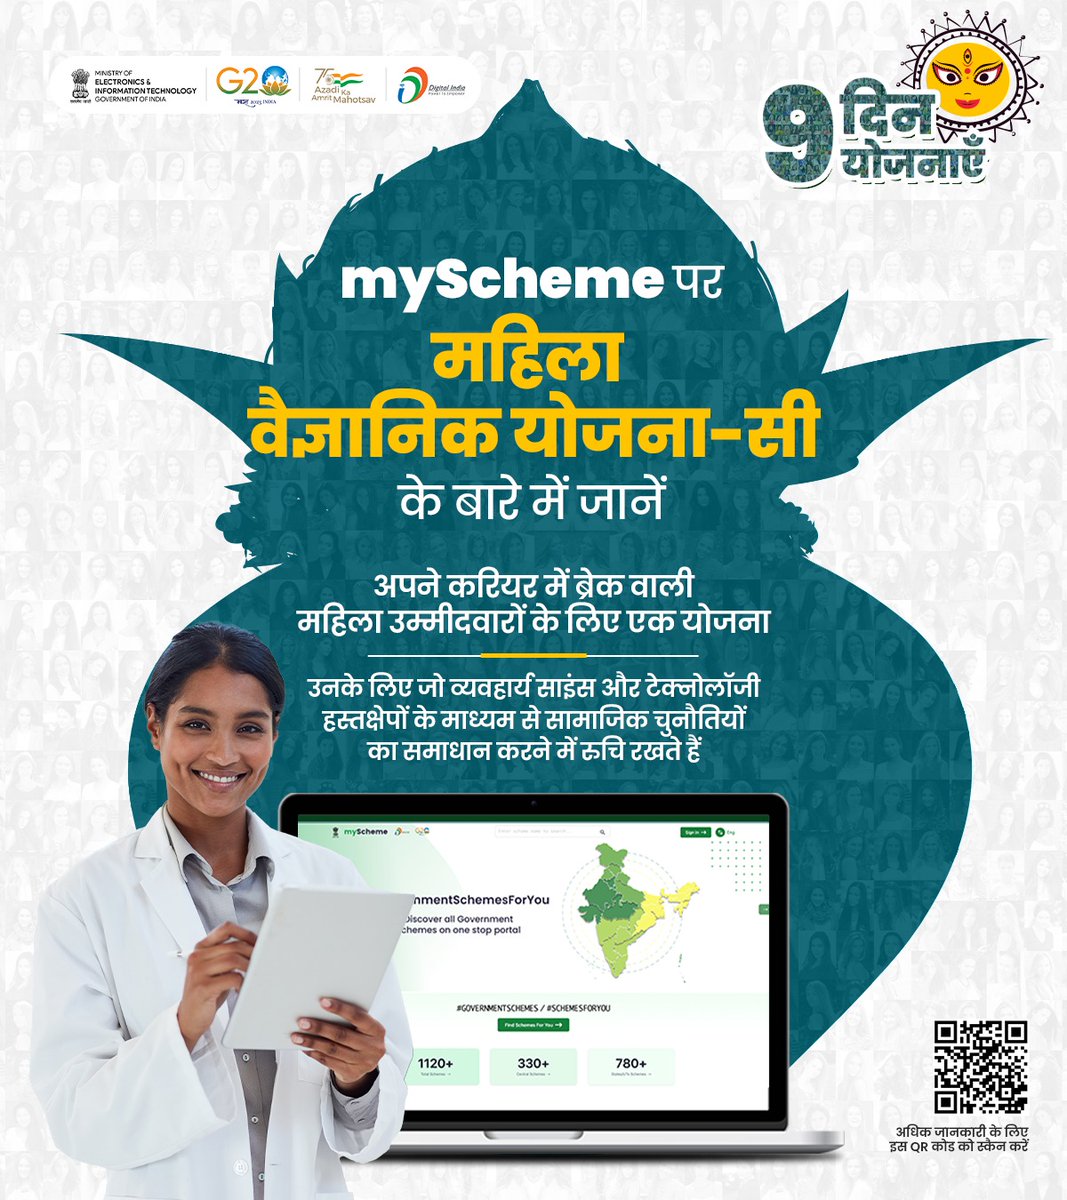 9 दिन 9 योजनाएँ | महिला वैज्ञानिक योजना-सी के तहत, 1 साल का प्रशिक्षण प्रदान किया जाता है। न्यूनतम आवश्यक योग्यताएँ MSc, इंजीनियरिंग/tech में स्नातक या समकक्ष। विजिट करें myscheme.gov.in/schemes/wos-c
#Schemesforyou #GovernmentSchemes #DigitalIndia